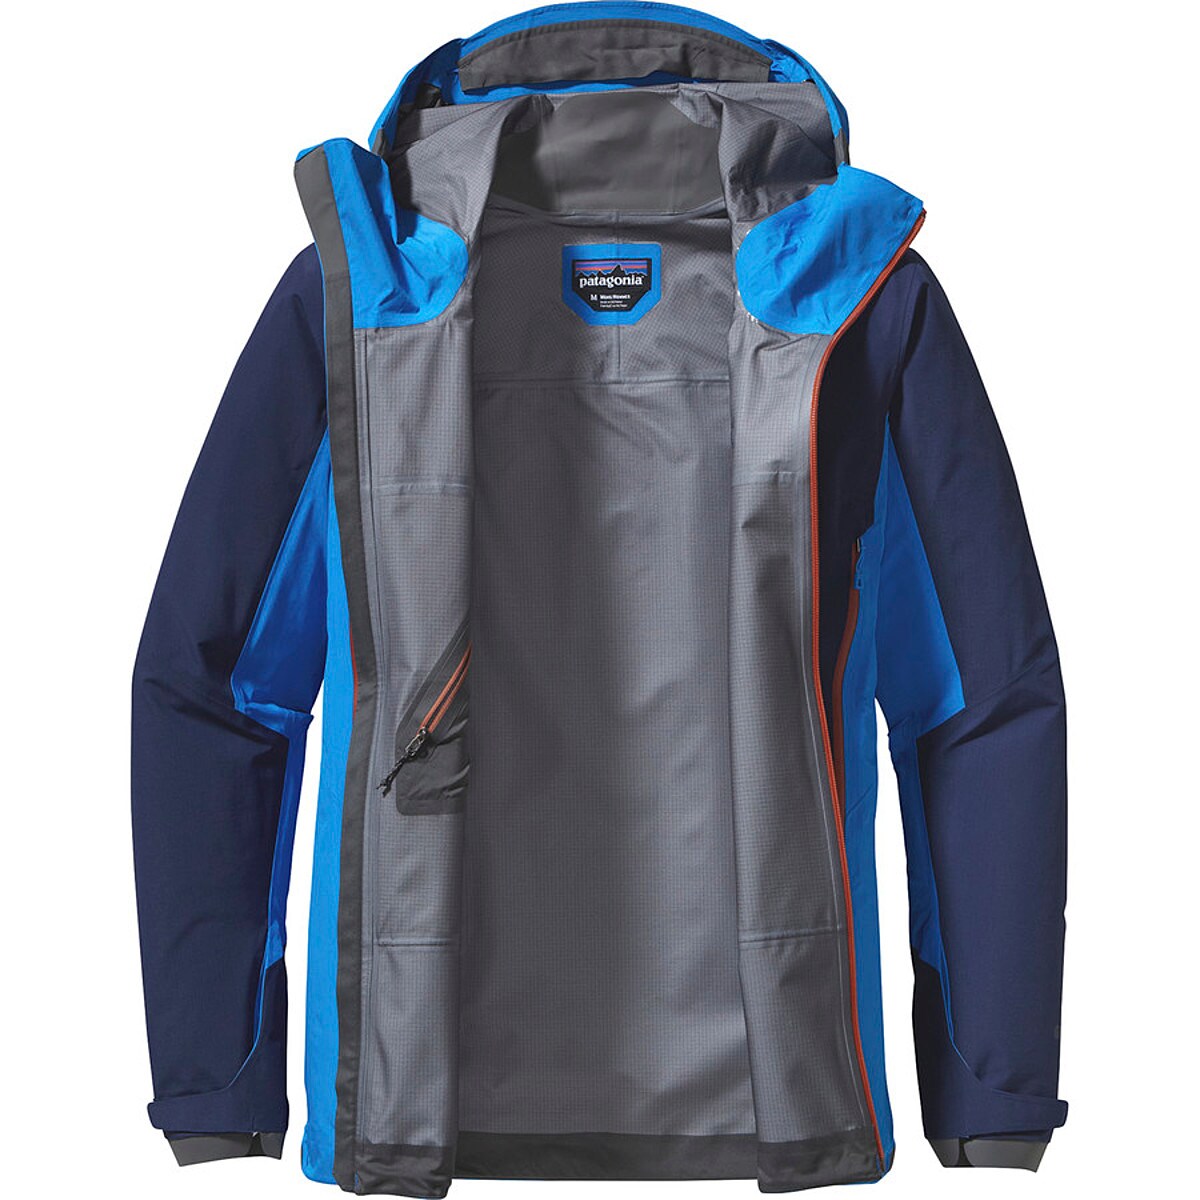 Patagonia Super Alpine Jacket - Men's - Clothing